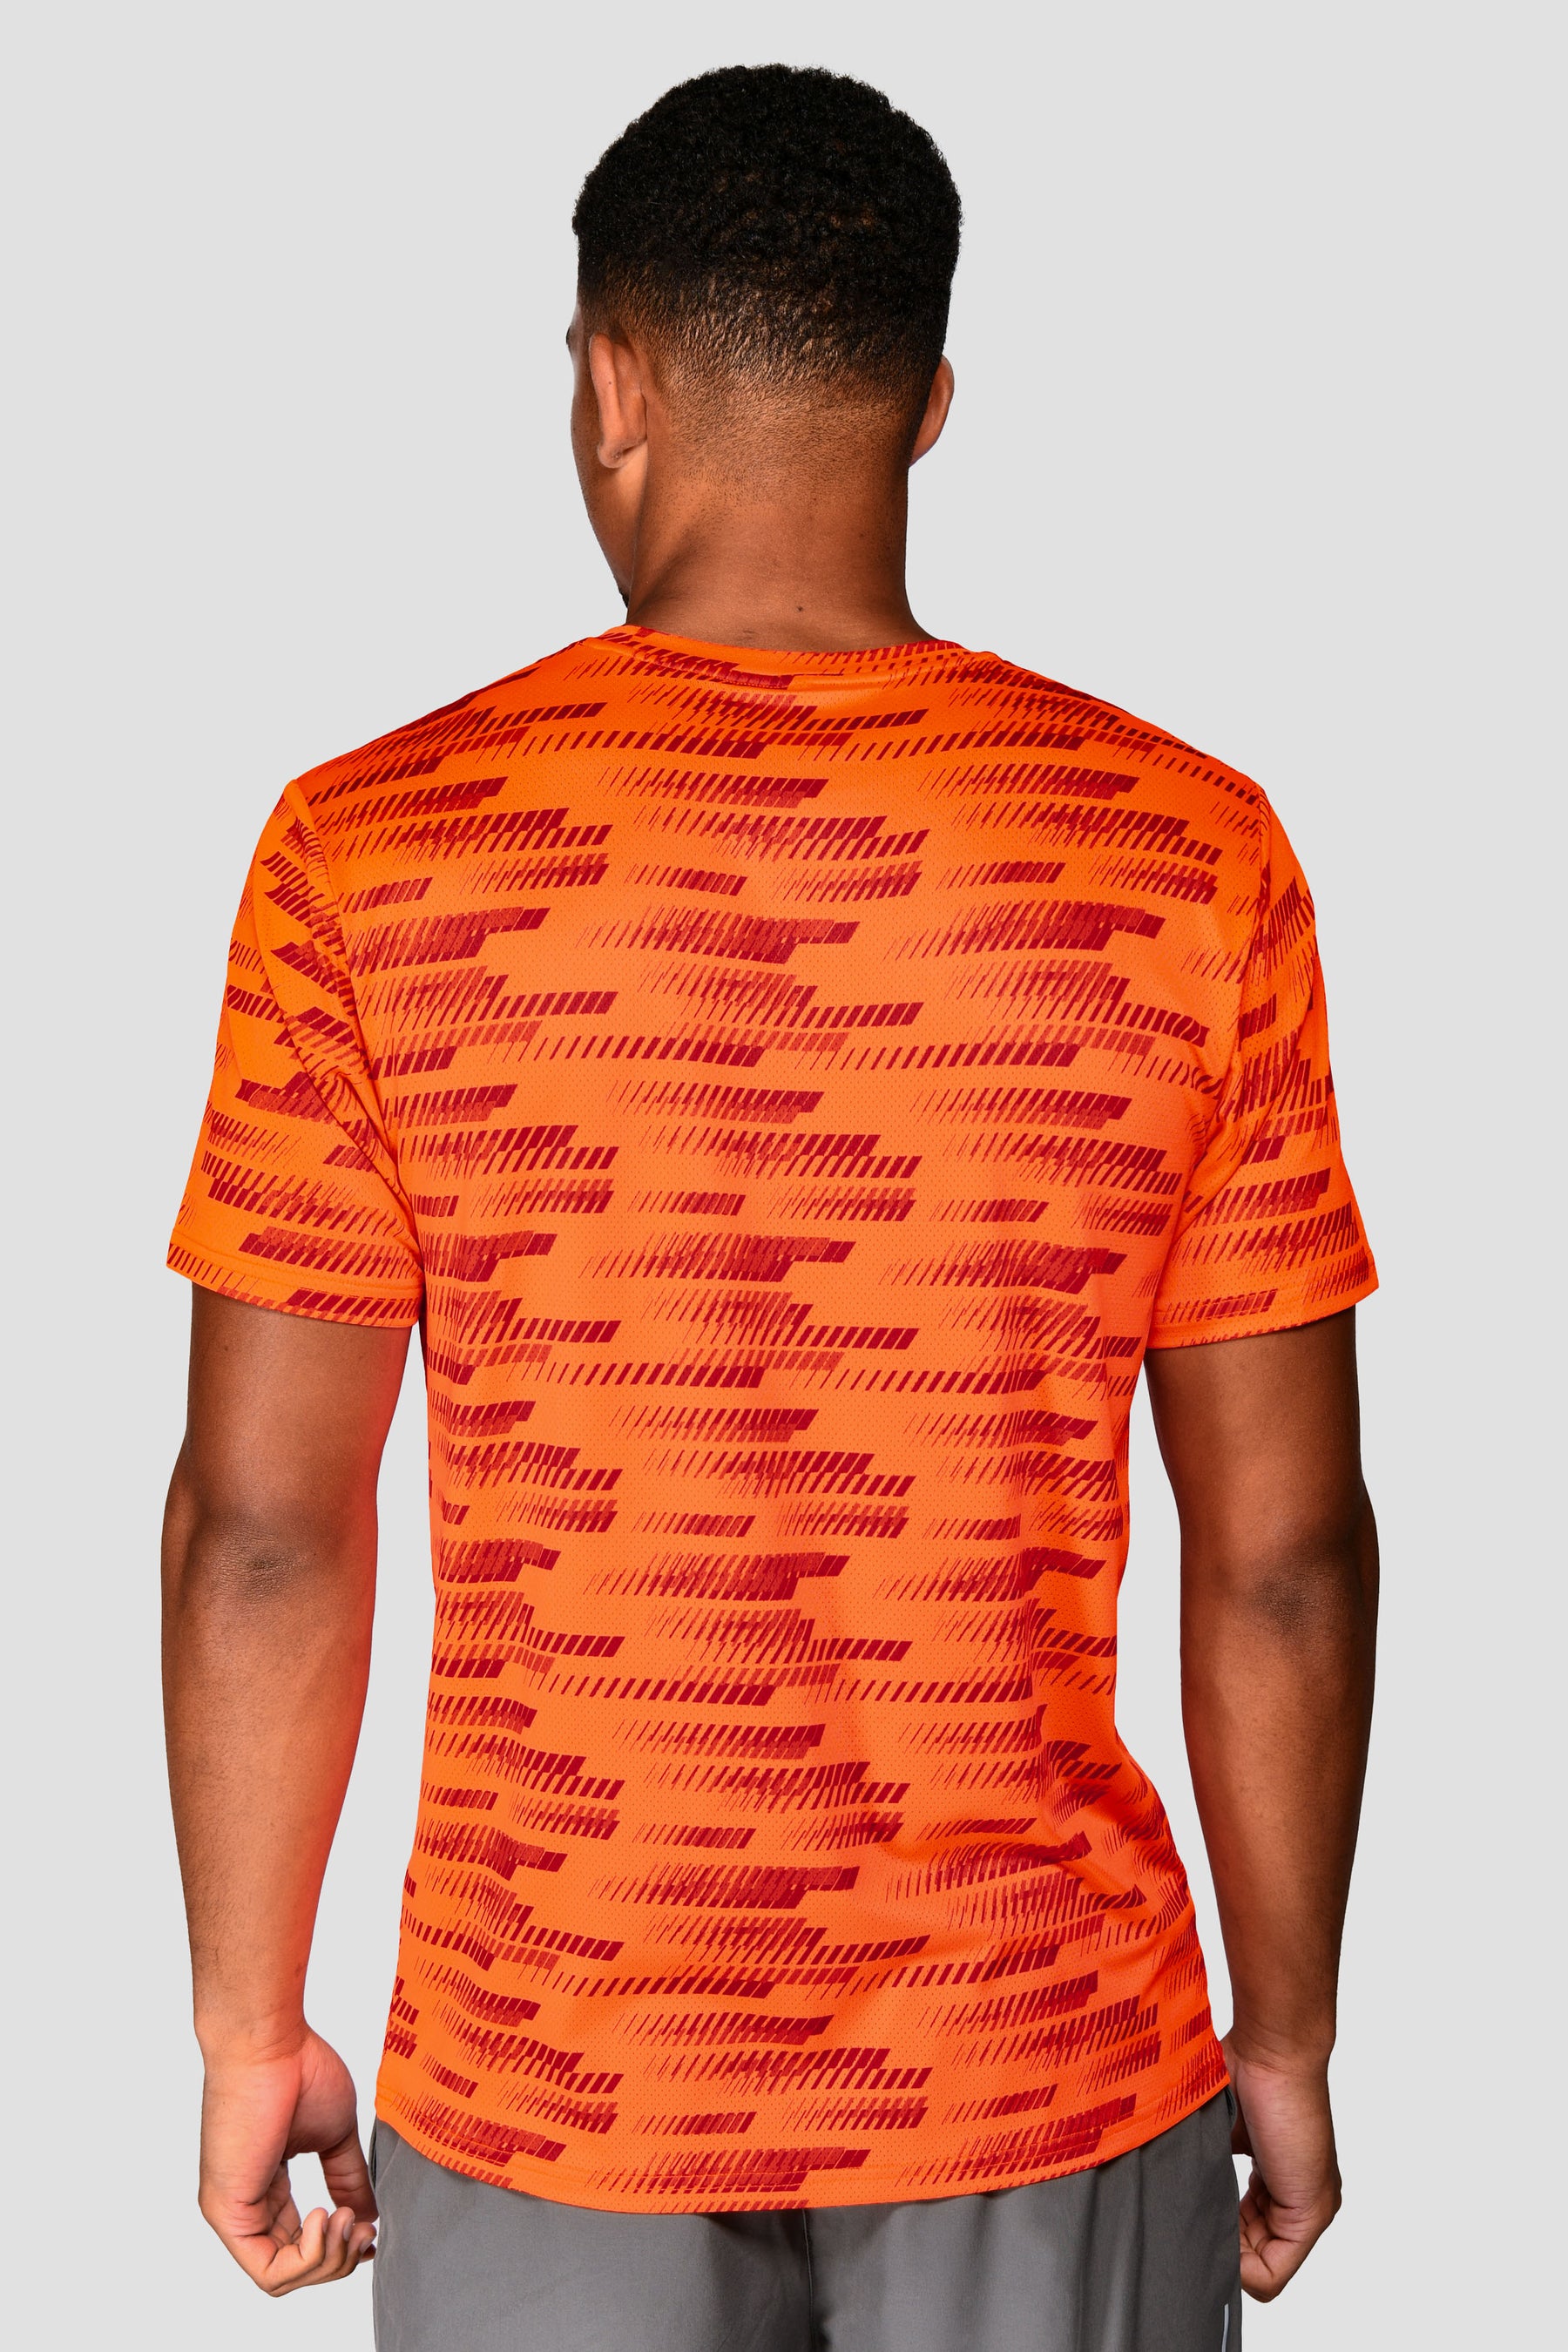 Apex T-Shirt - Fiery Orange/Vermillion Orange